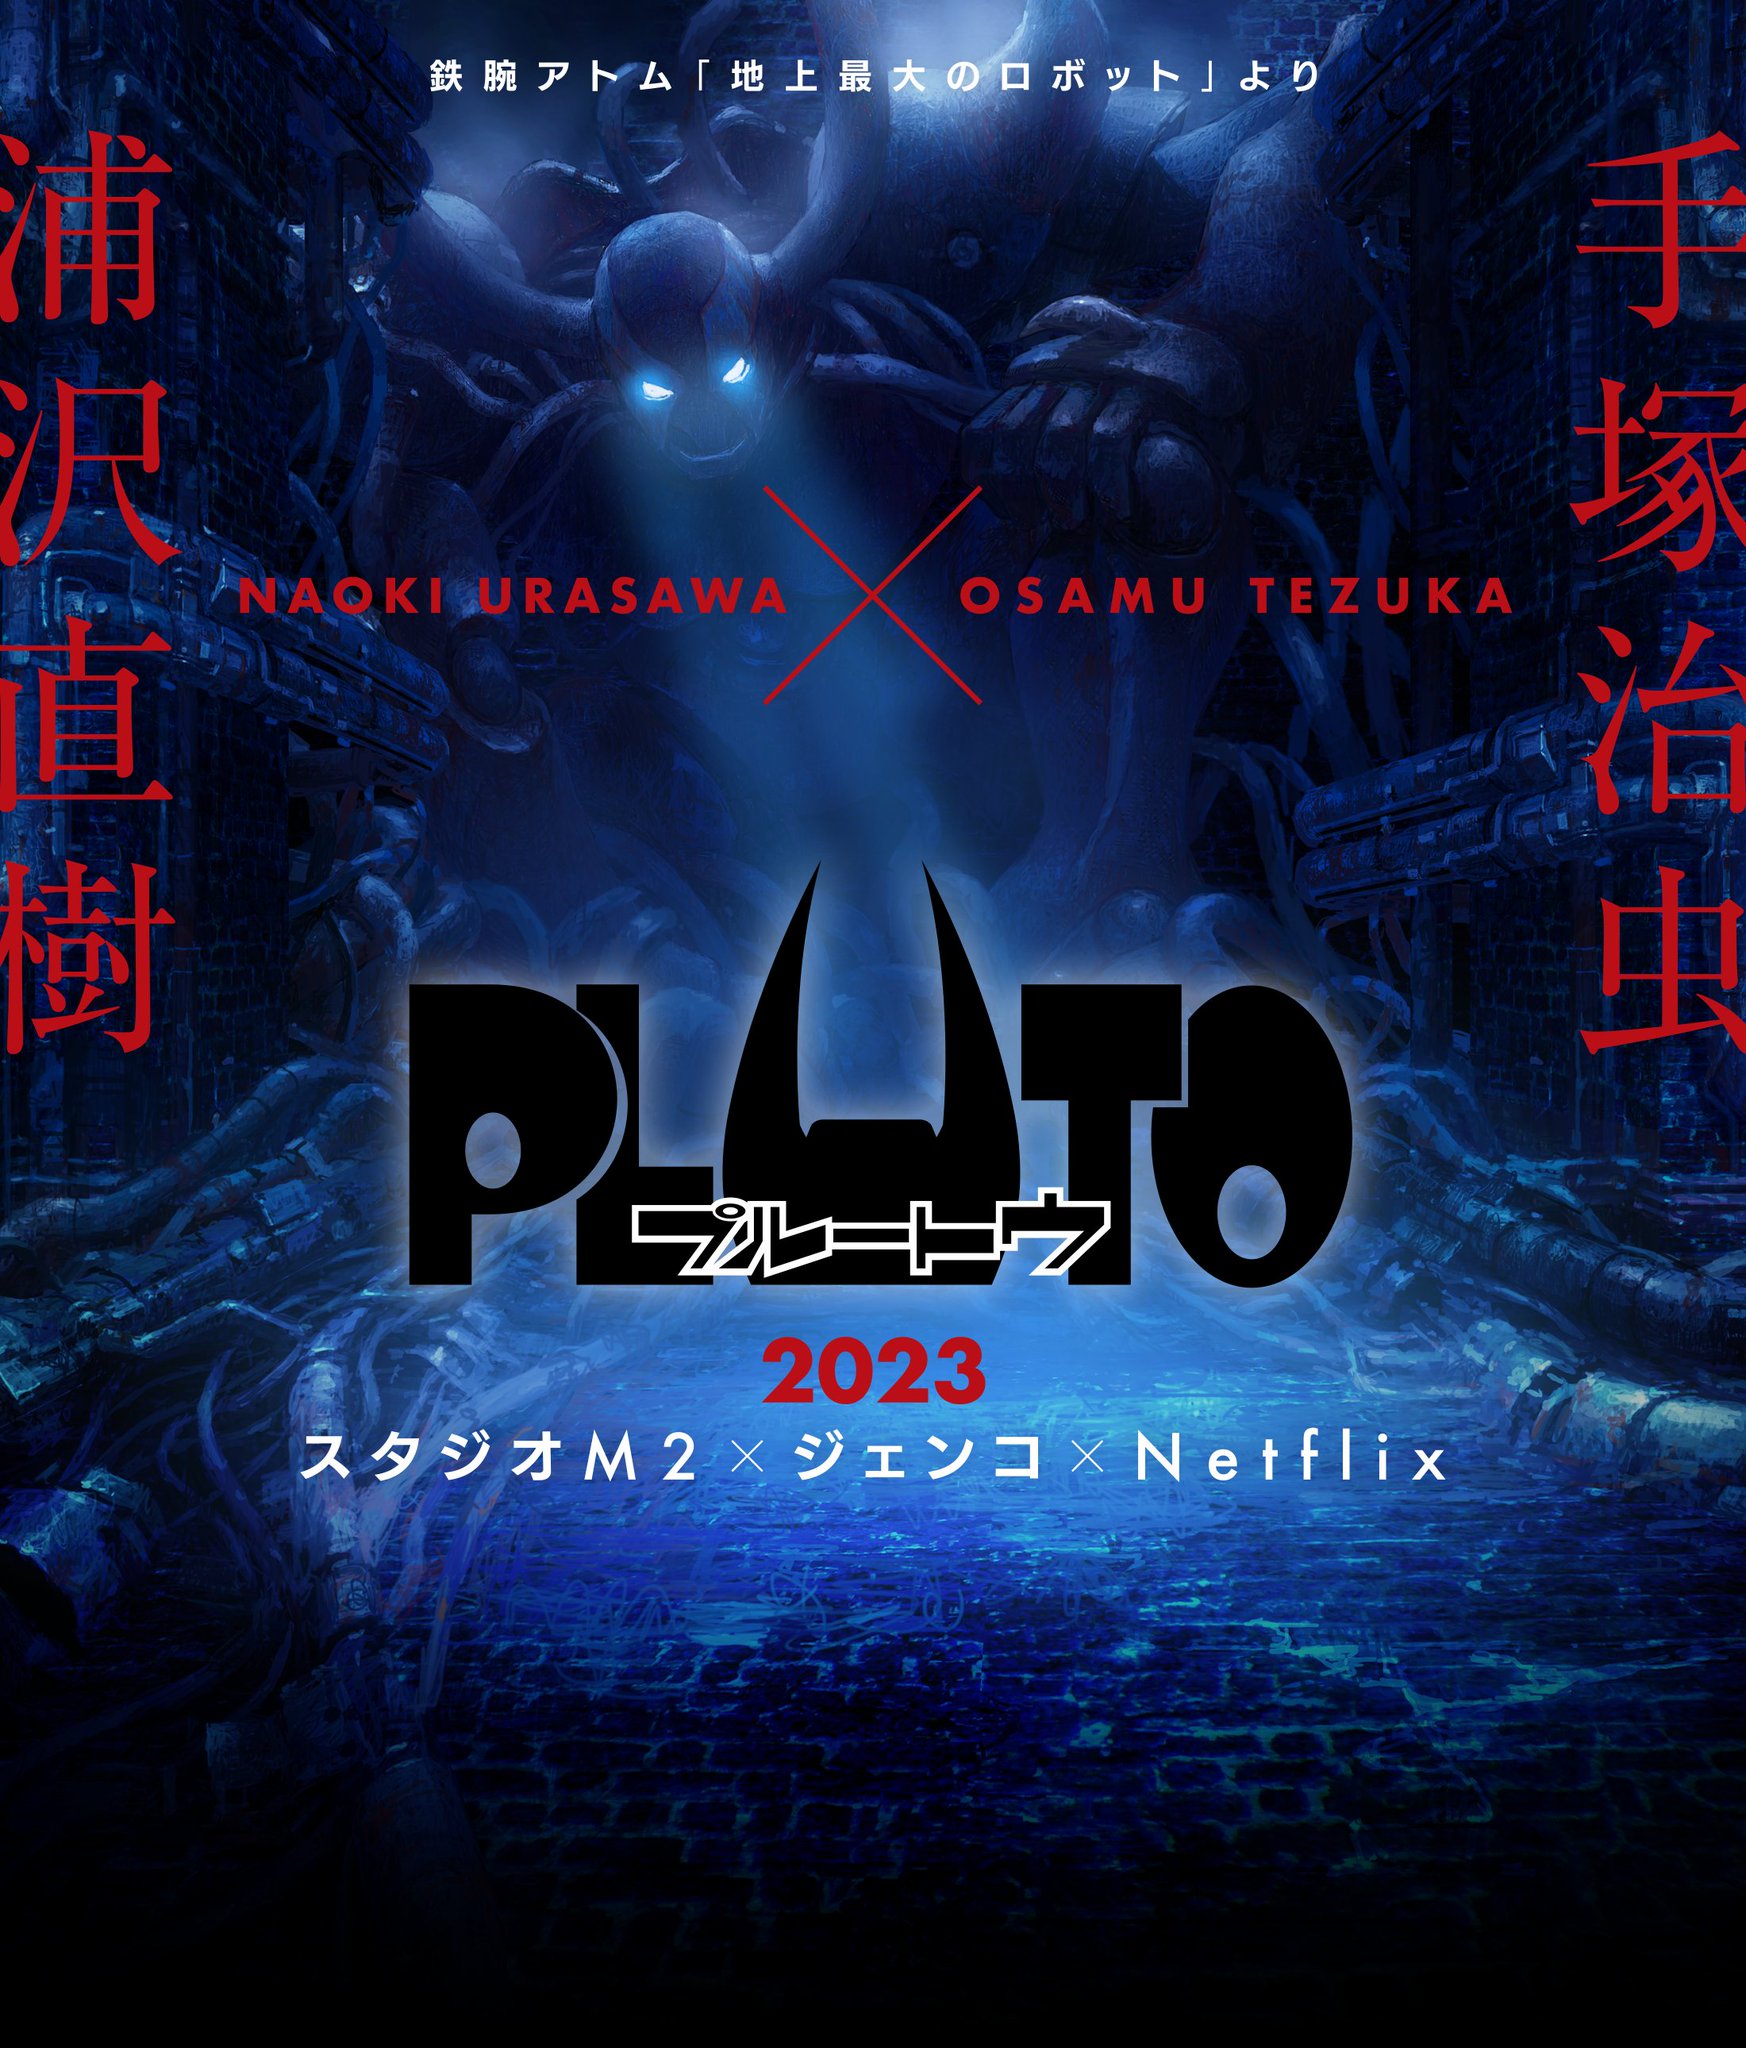 Pluto: Como o anime da Netflix se conecta a Astro Boy